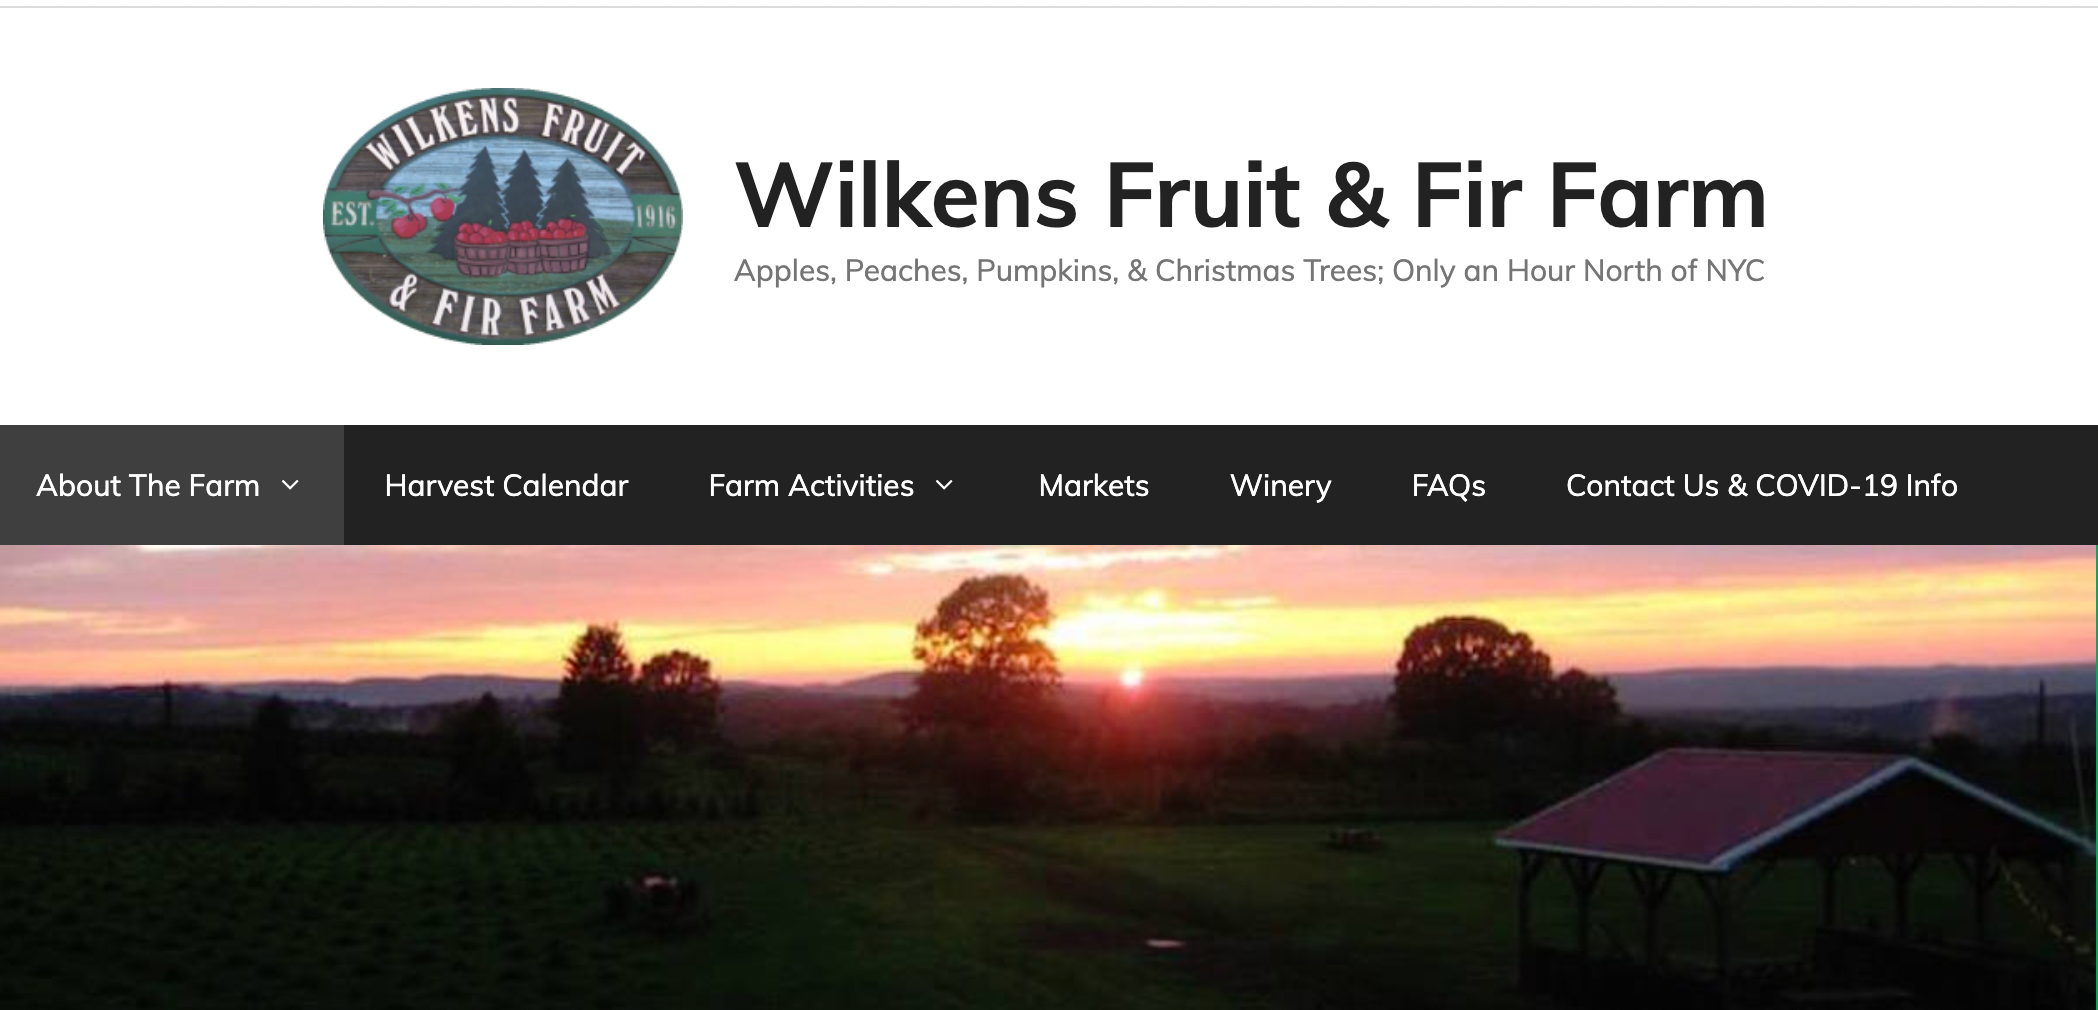 Wilkens Fruit & Fir Farm